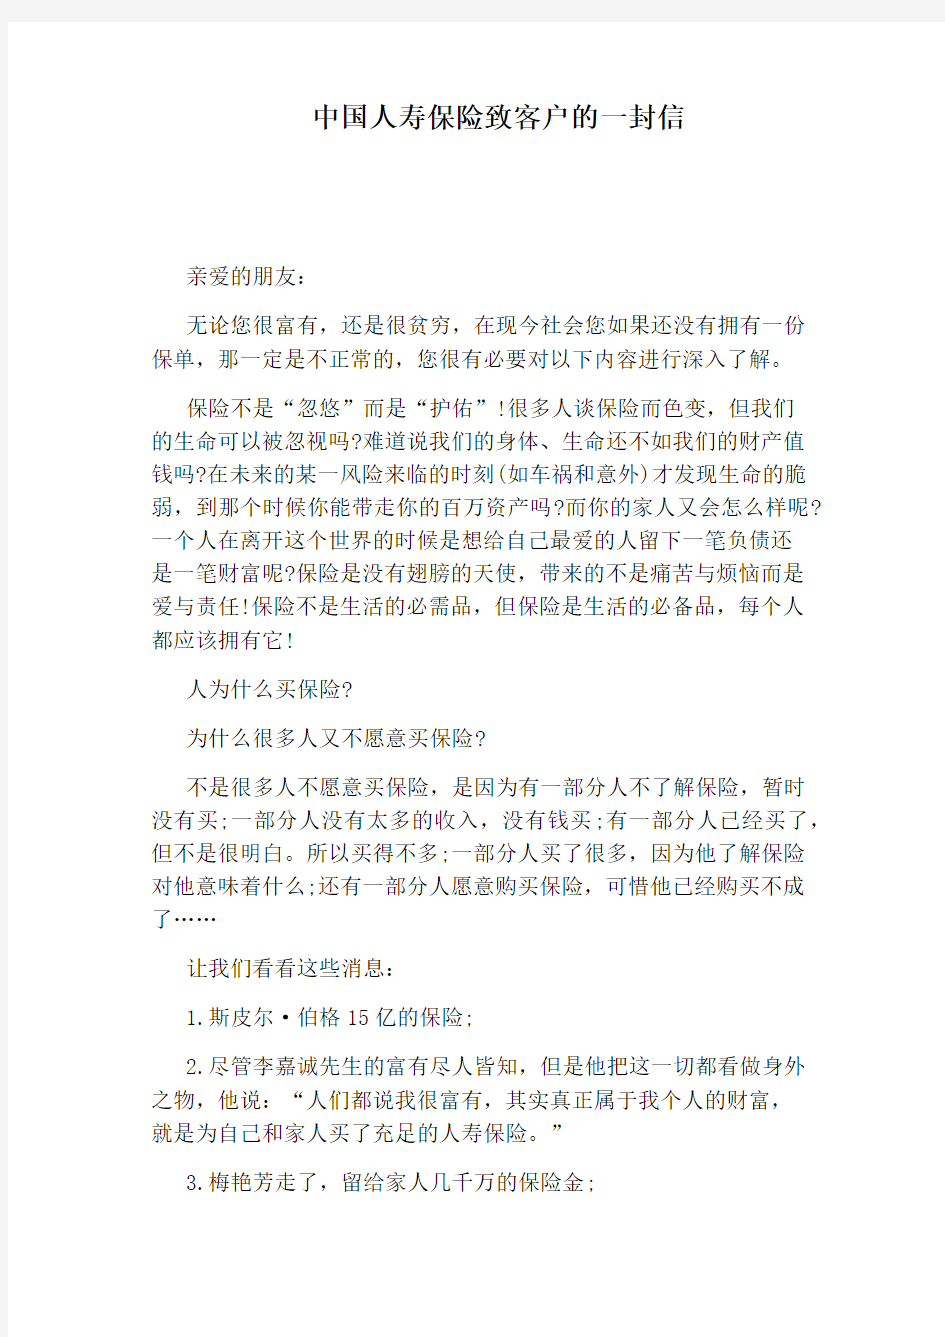 中国人寿保险致客户的一封信